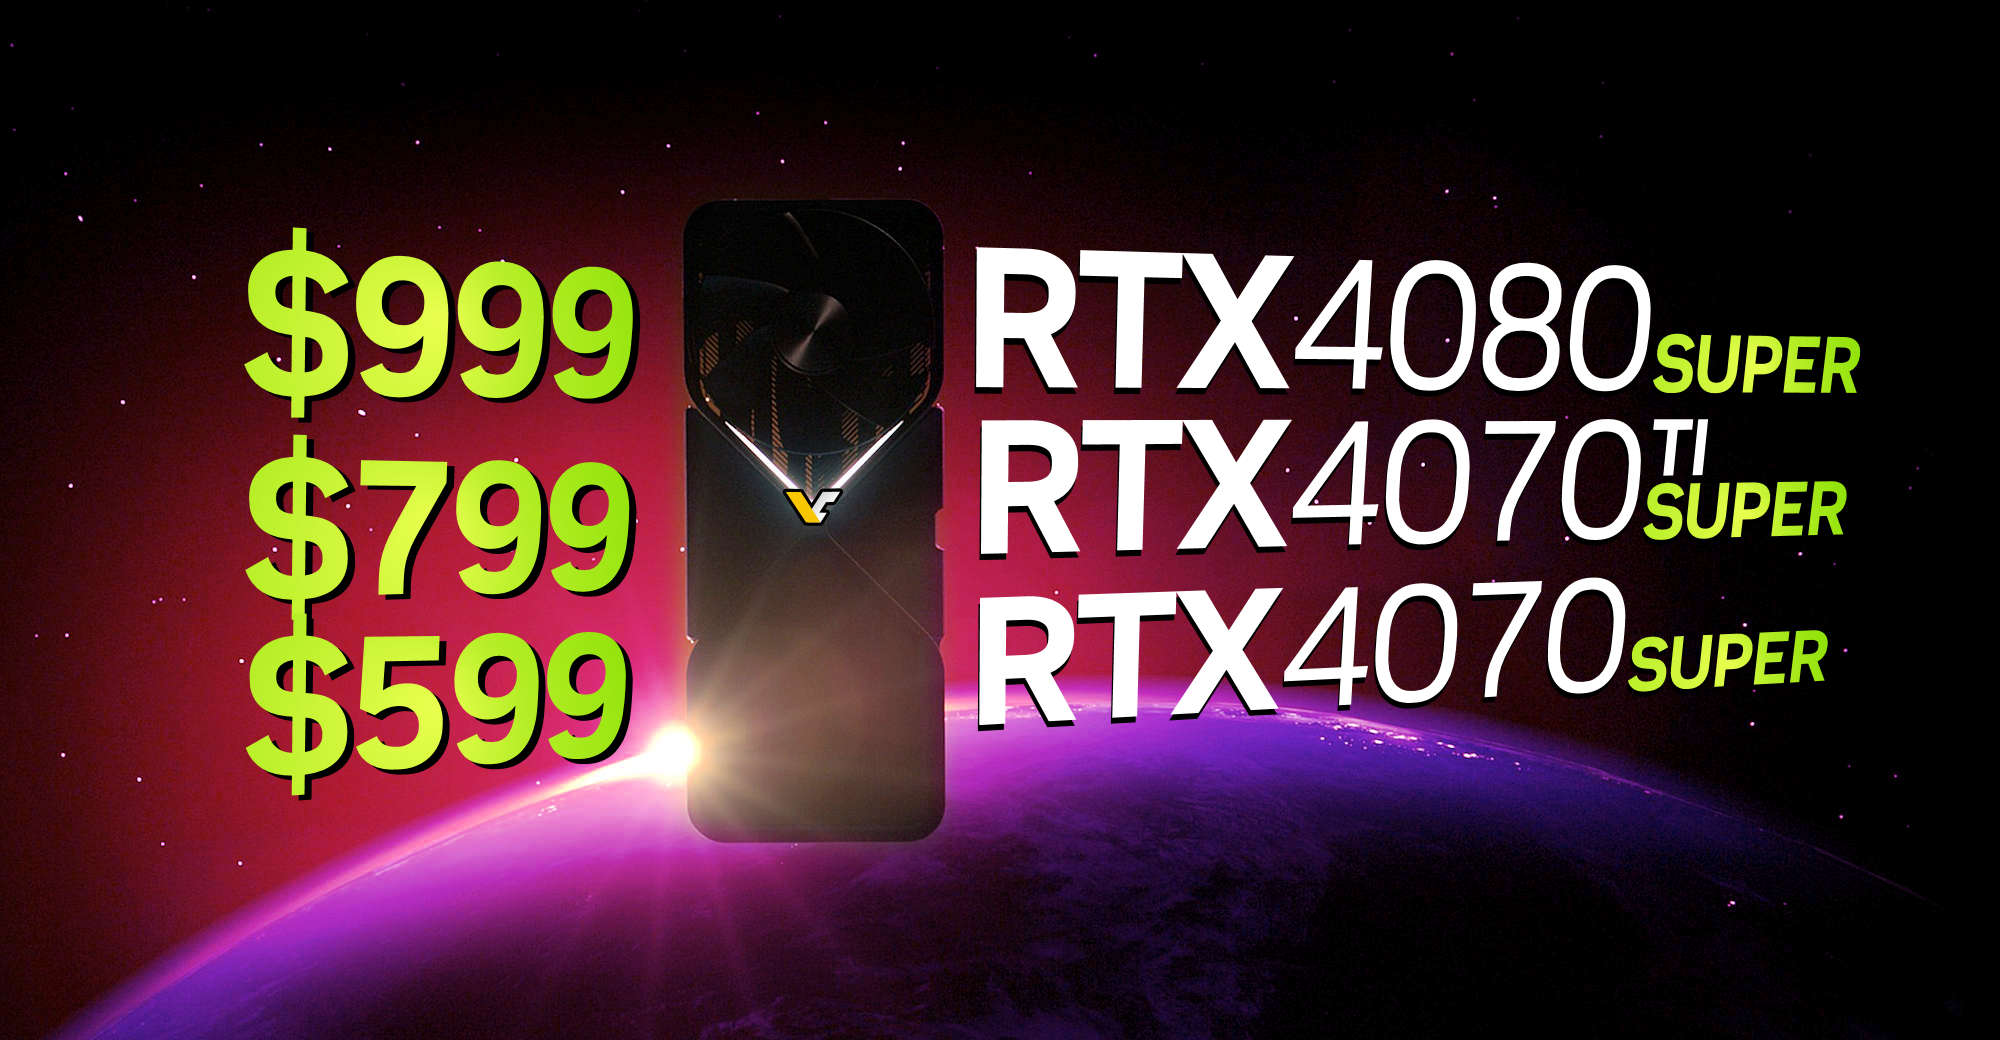 NVIDIA RTX 4080 SUPER reportedly costs $999, RTX 4070 Ti/4070 SUPER at $799/$599